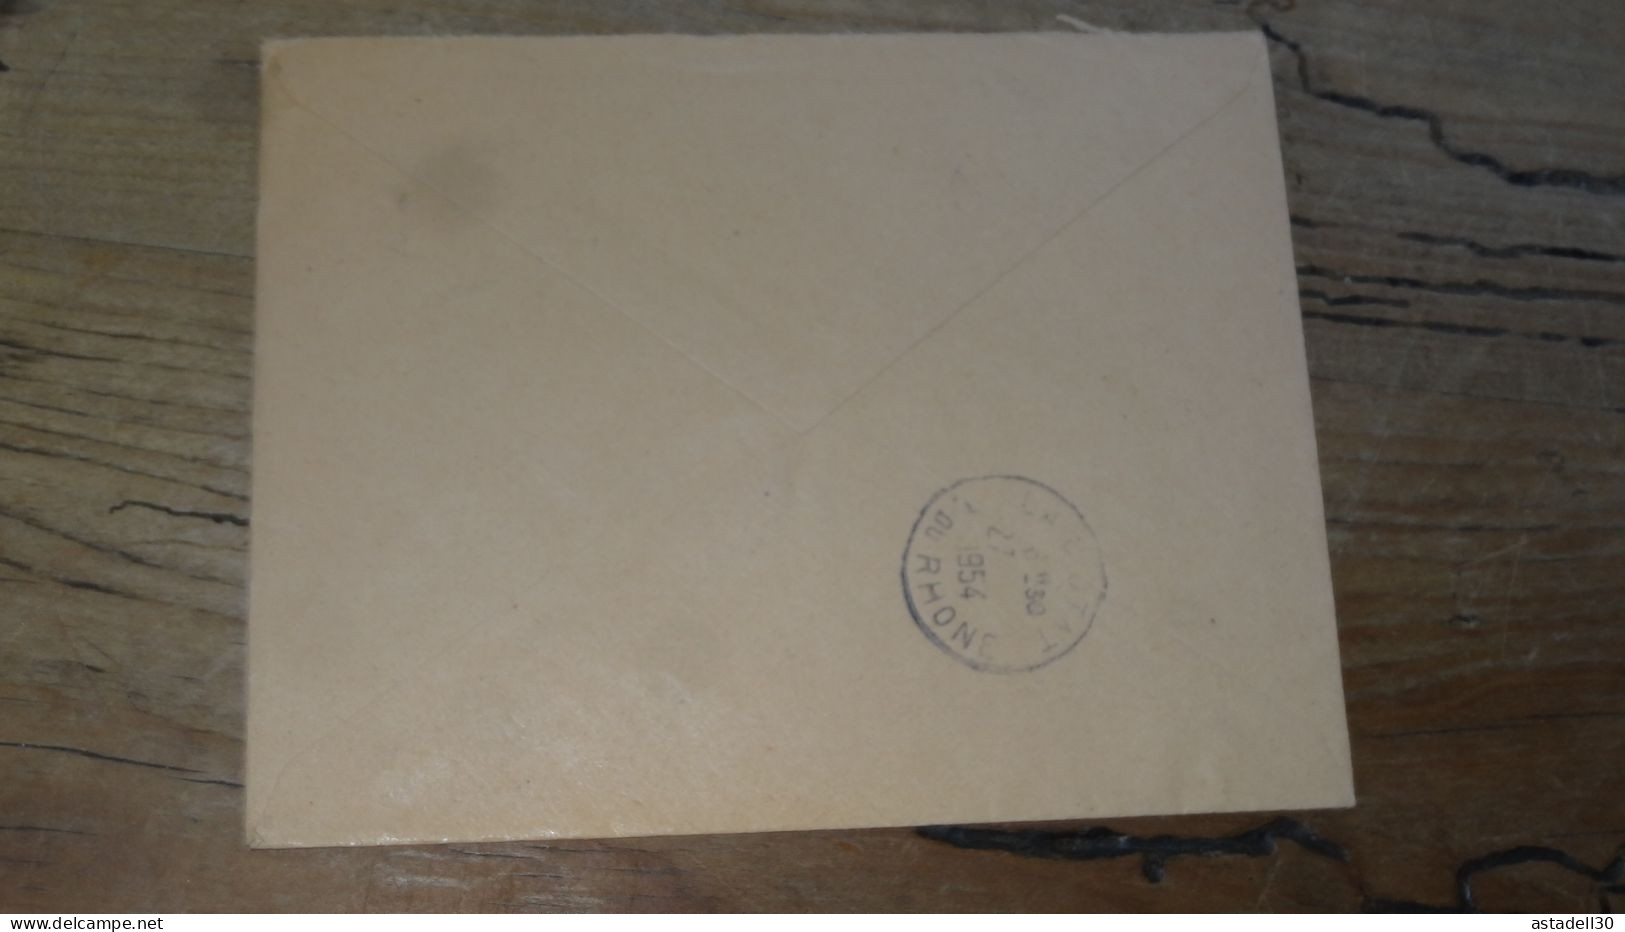 Enveloppe Recommandée PARIS Pour LA CIOTAT - 1954  ............BOITE1.......... 488 - 1921-1960: Modern Period